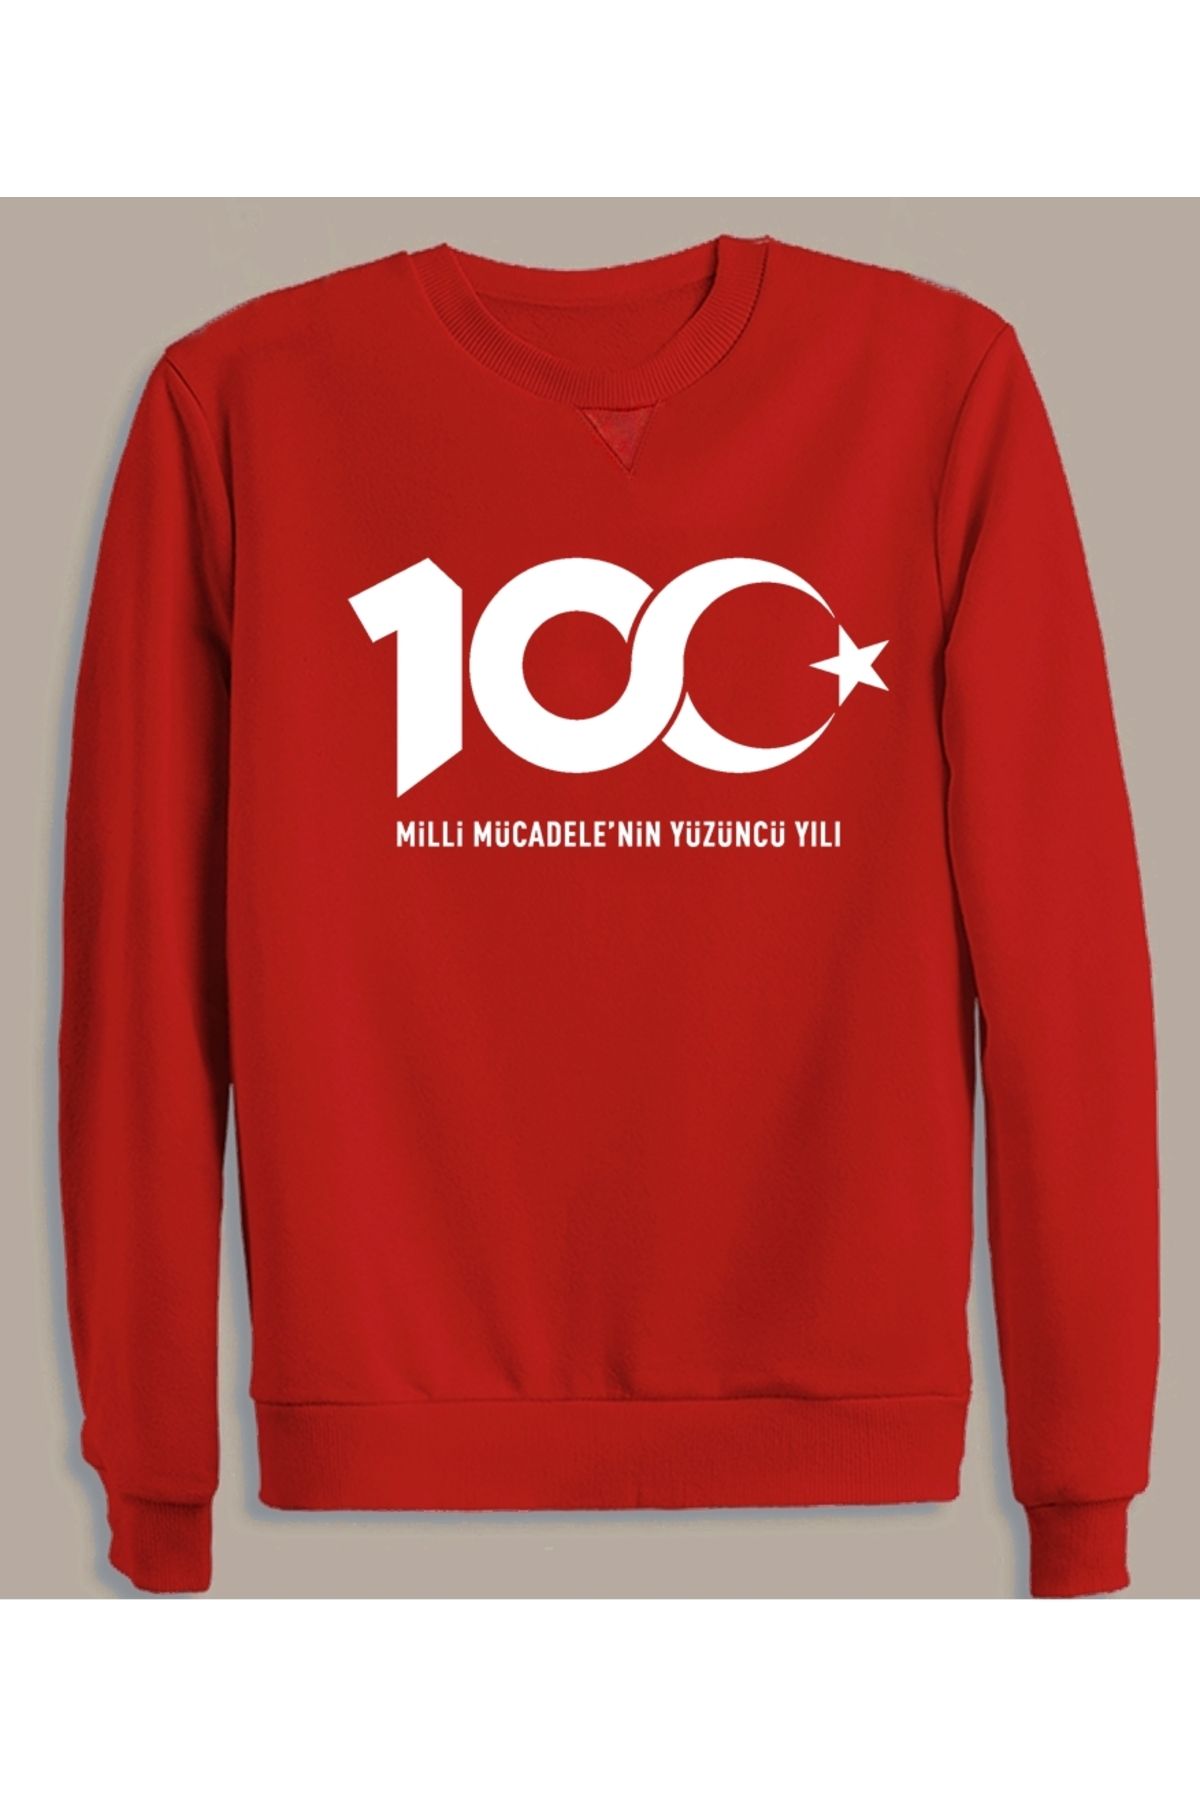 Efendioğlu Design Kırmızı 100.yıl Türkiye Logo Baskılı Erkek Pamuklu  Sweatshirt 29 Ekim Fiyatı, Yorumları - Trendyol